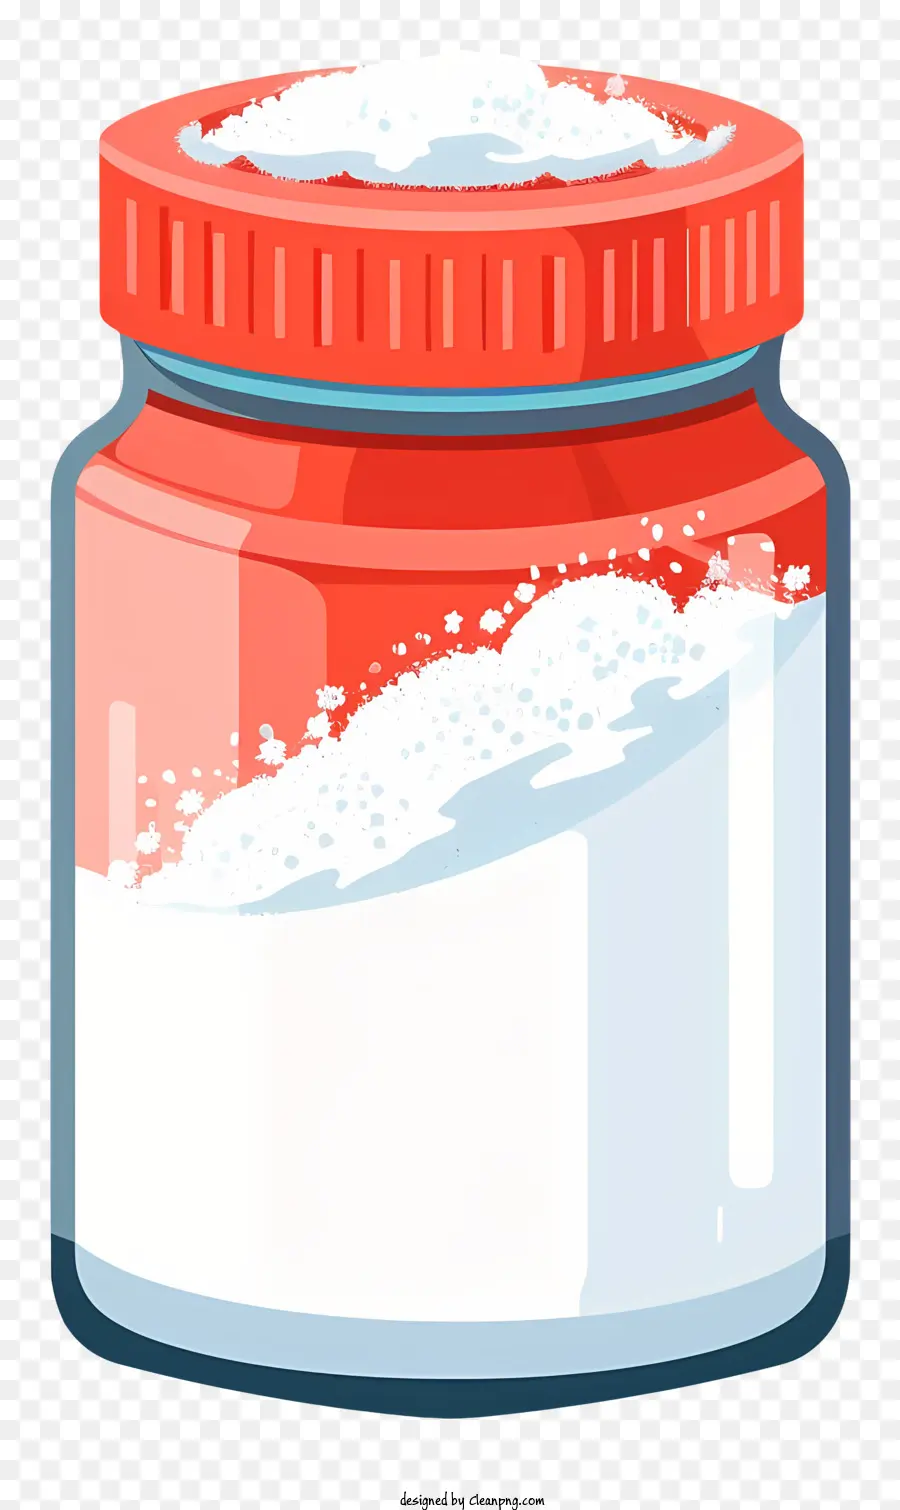 lavaggio in polvere in vetro in granito a polvere bianca glassa di zucchero decorazioni per la torta di zucchero - Barattolo rosso e bianco con polvere bianca